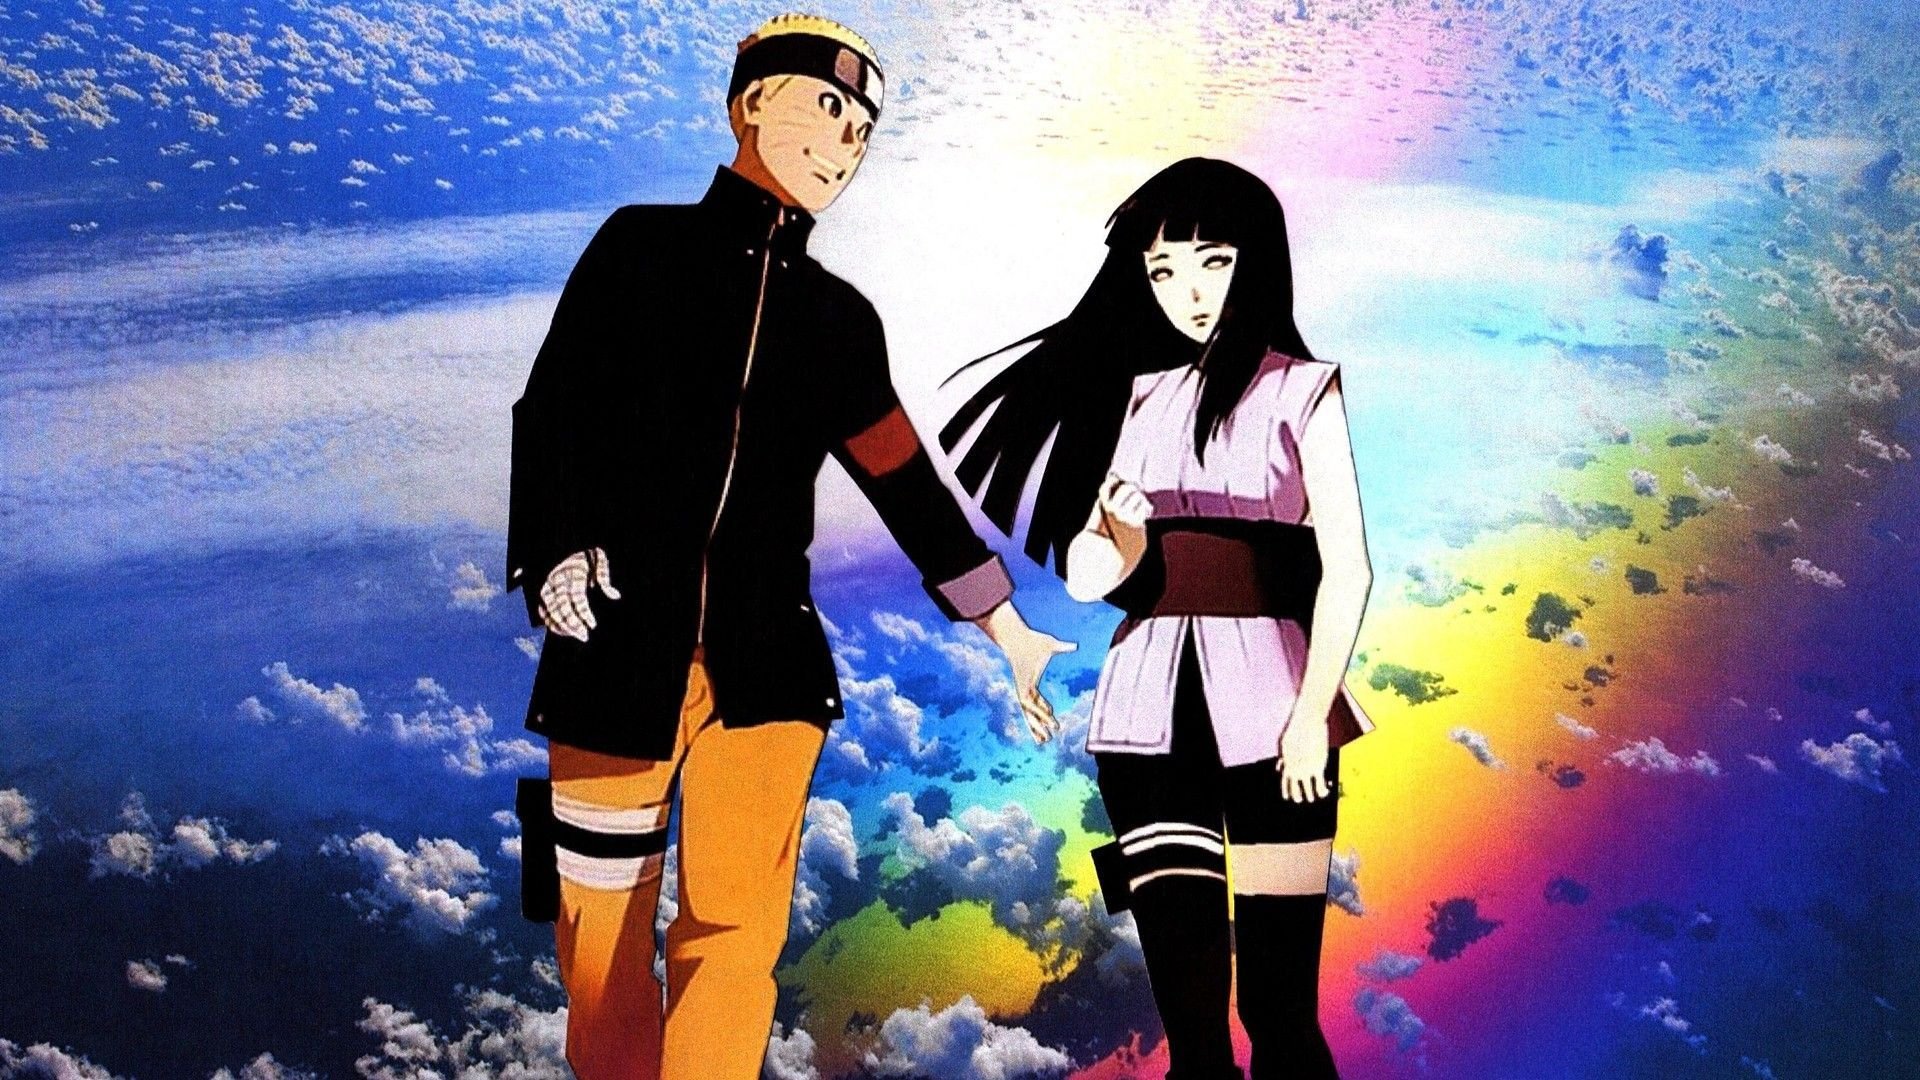 Naruto and Hinata Wallpaper Free Naruto and Hinata